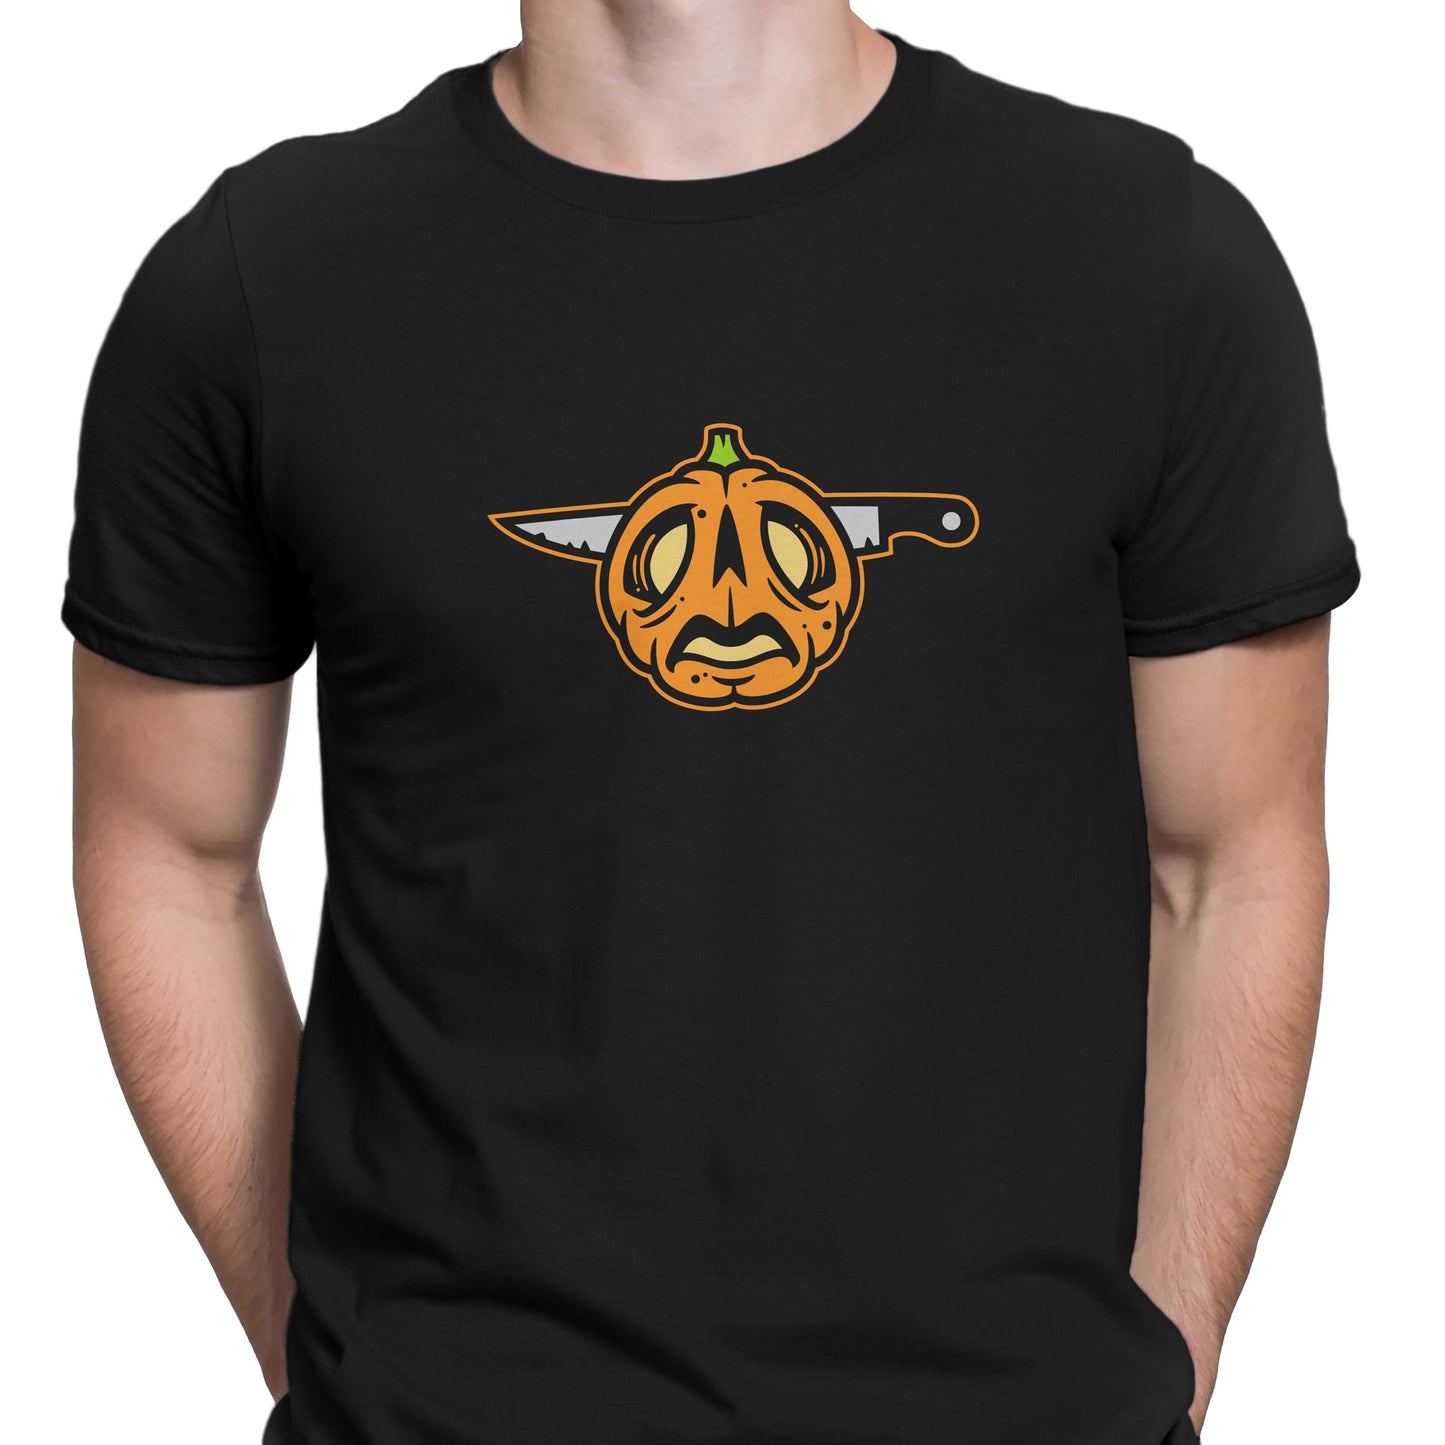 Zed T-Shirt